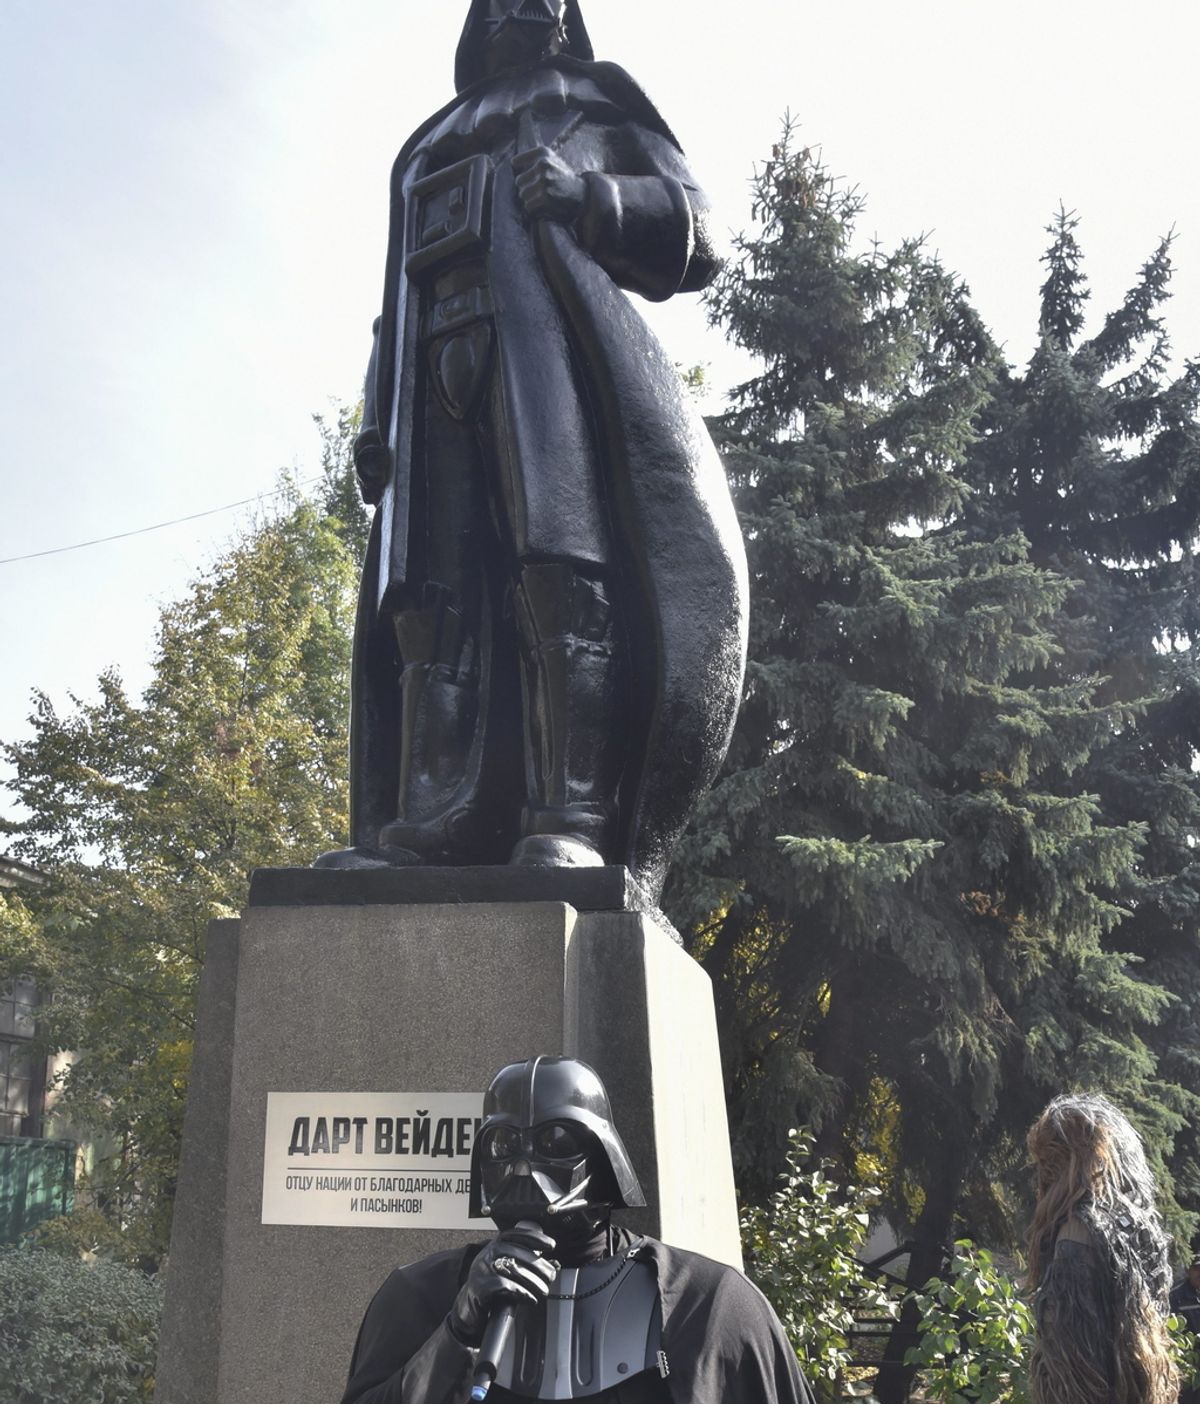 Darth Vader destrona a Lenin